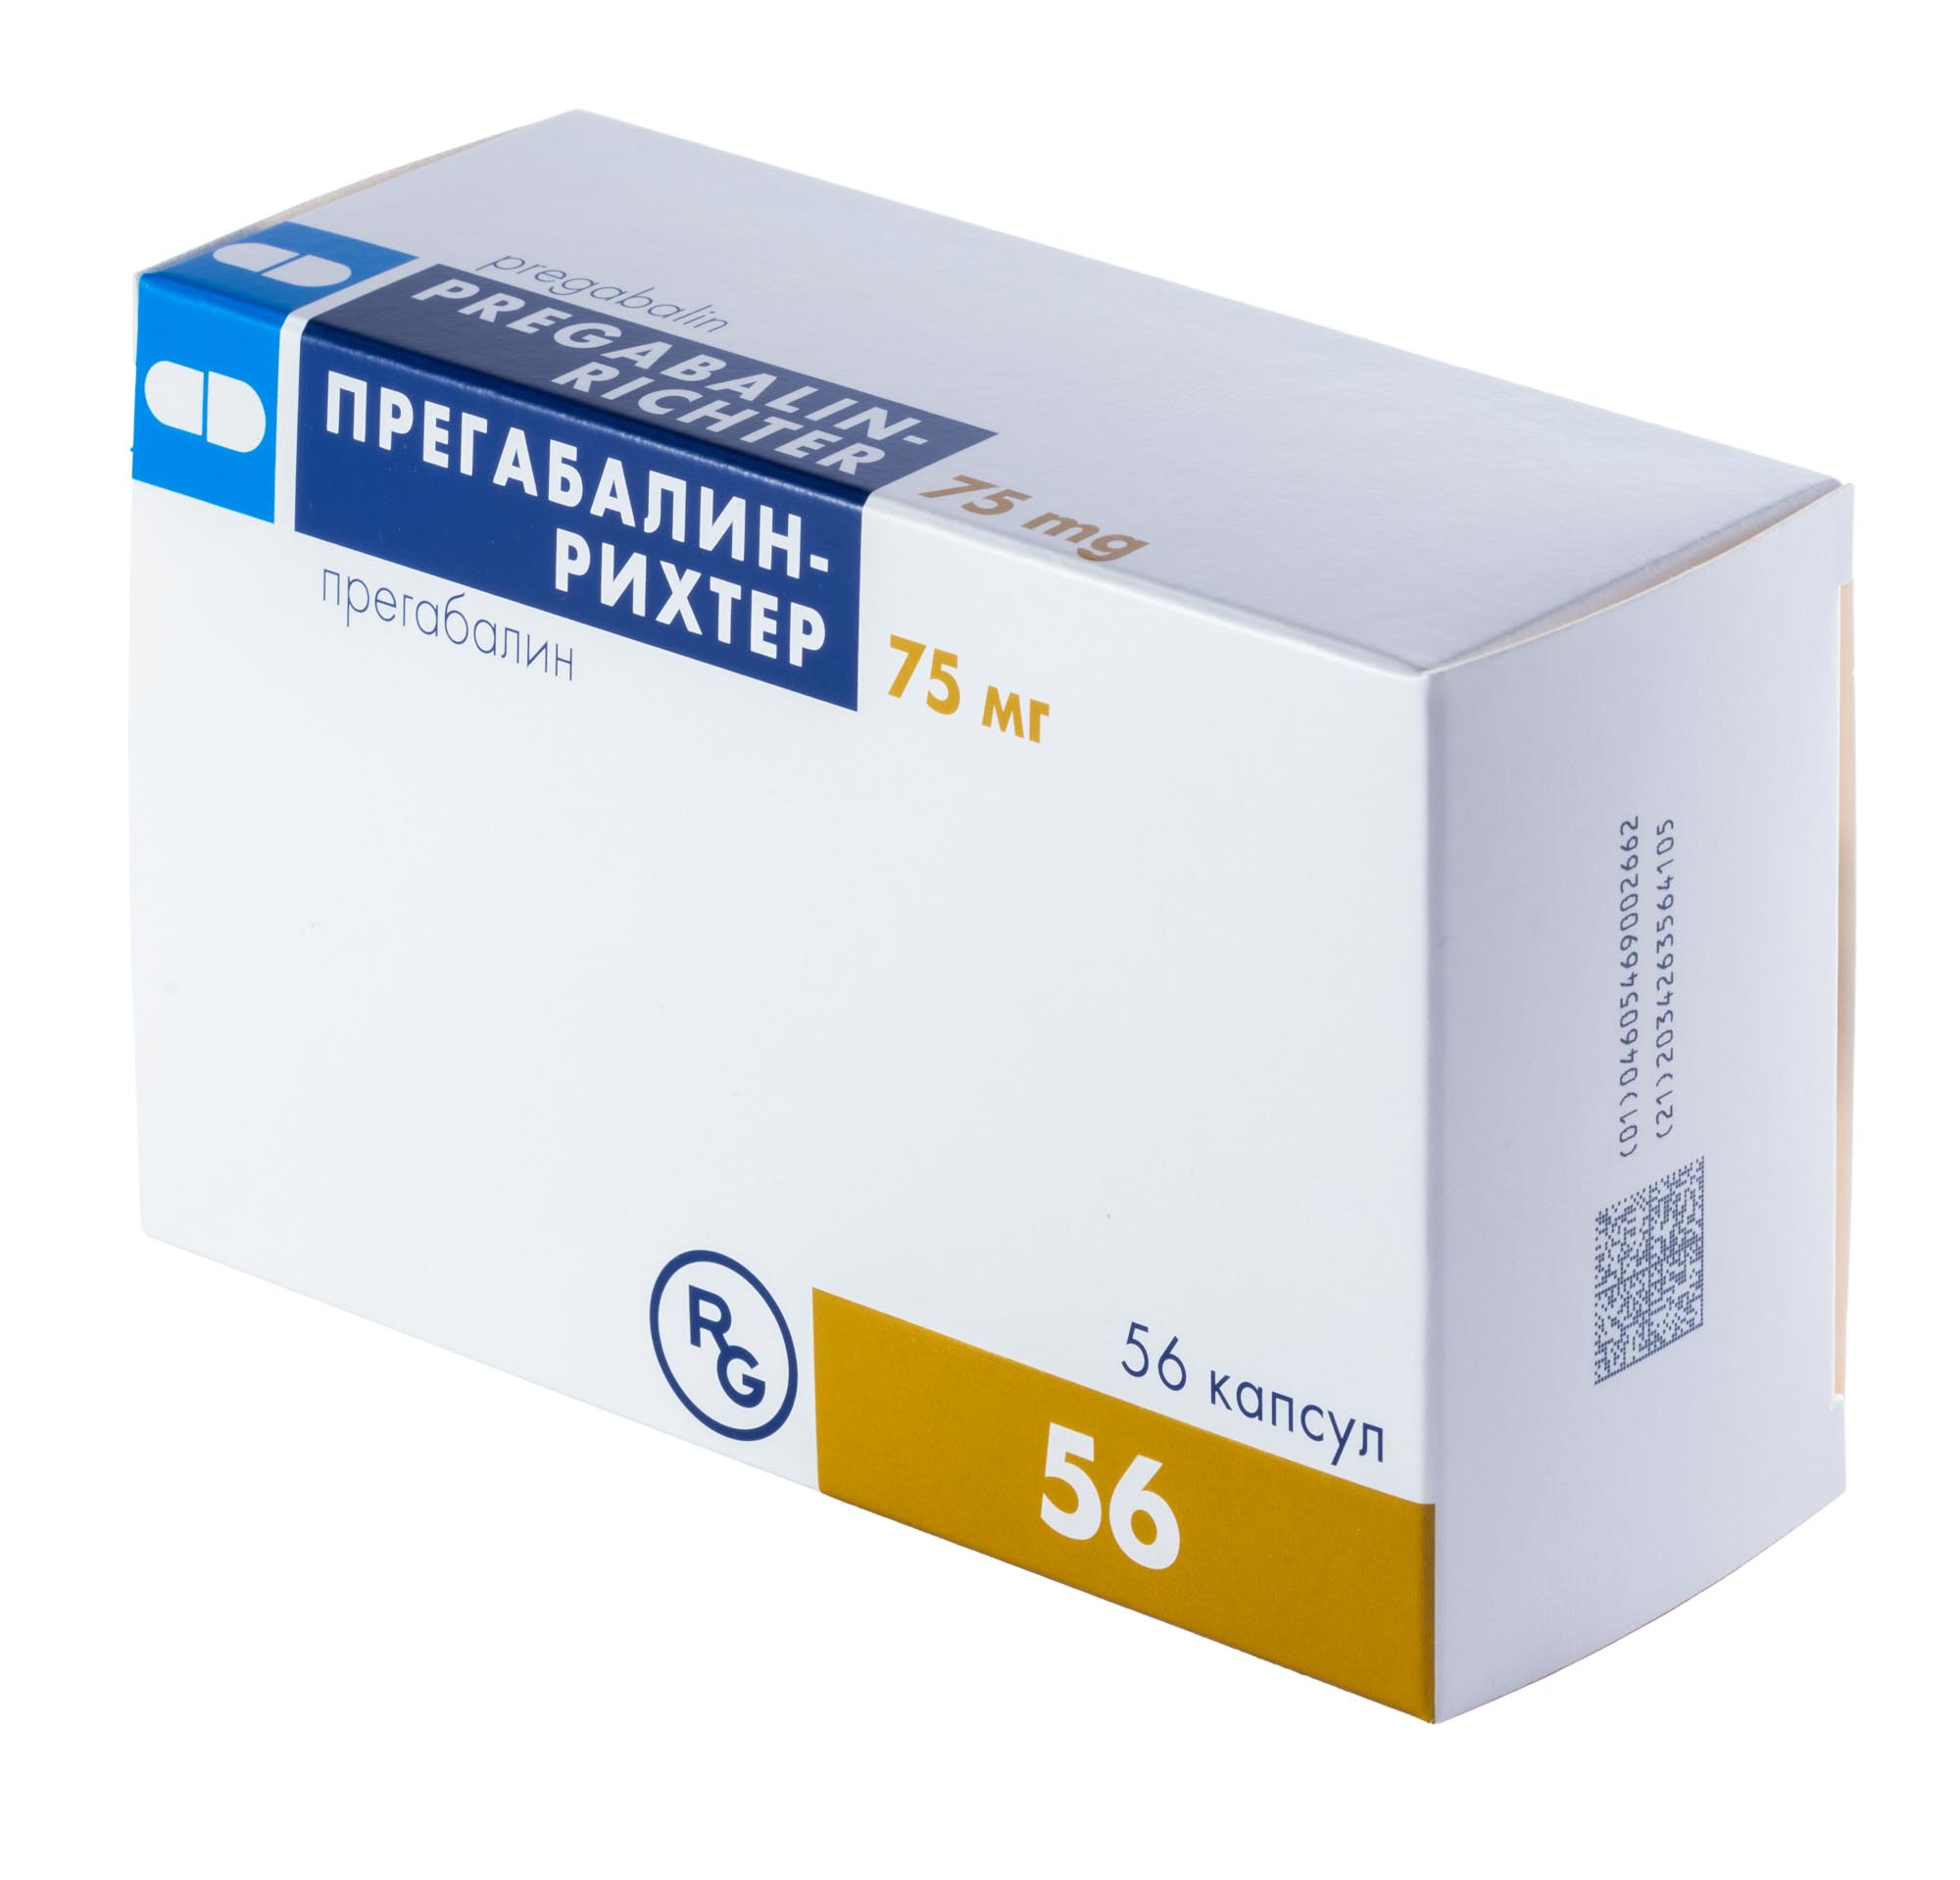 Прегабалин-Рихтер (Прегабалин) капсулы 75 мг №56